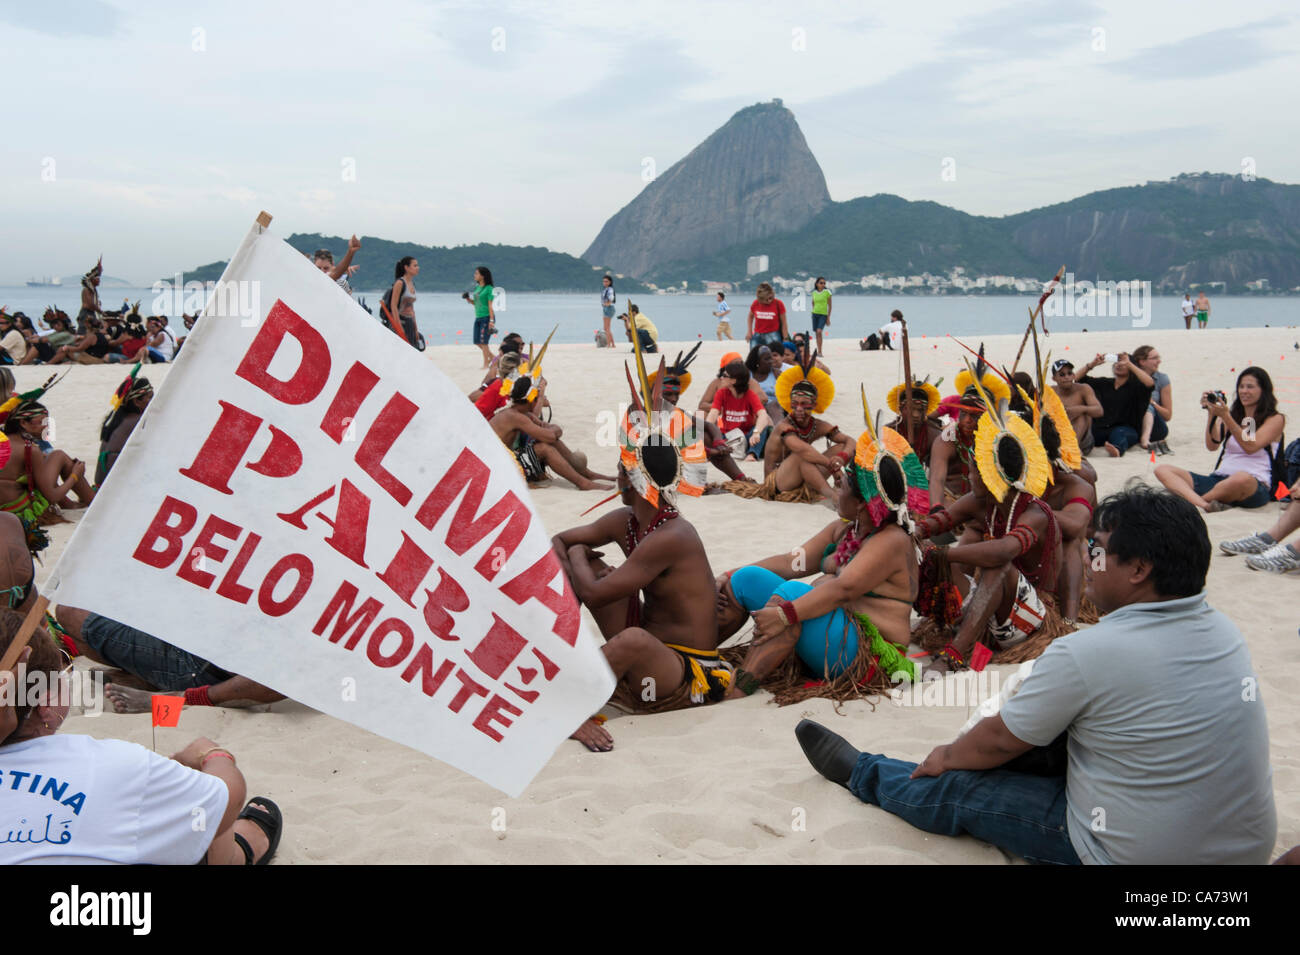 Los pueblos indígenas y otros están comenzando a montar los derechos de banner en la playa de Flamengo con el Pan de Azucar en el fondo, para protestar contra la construcción de represas hidroeléctricas en los ríos de Brasil. Un participante lleva una bandera, 'Dilma Belo Monte Tcap' - 'Dilma [el presidente de Brasil] Deje de Belo Monte". La Cumbre de los pueblos en la Conferencia de las Naciones Unidas sobre Desarrollo Sostenible (Río+20), Río de Janeiro, Brasil, 19 de junio de 2012. Foto © Sue Cunningham. Foto de stock